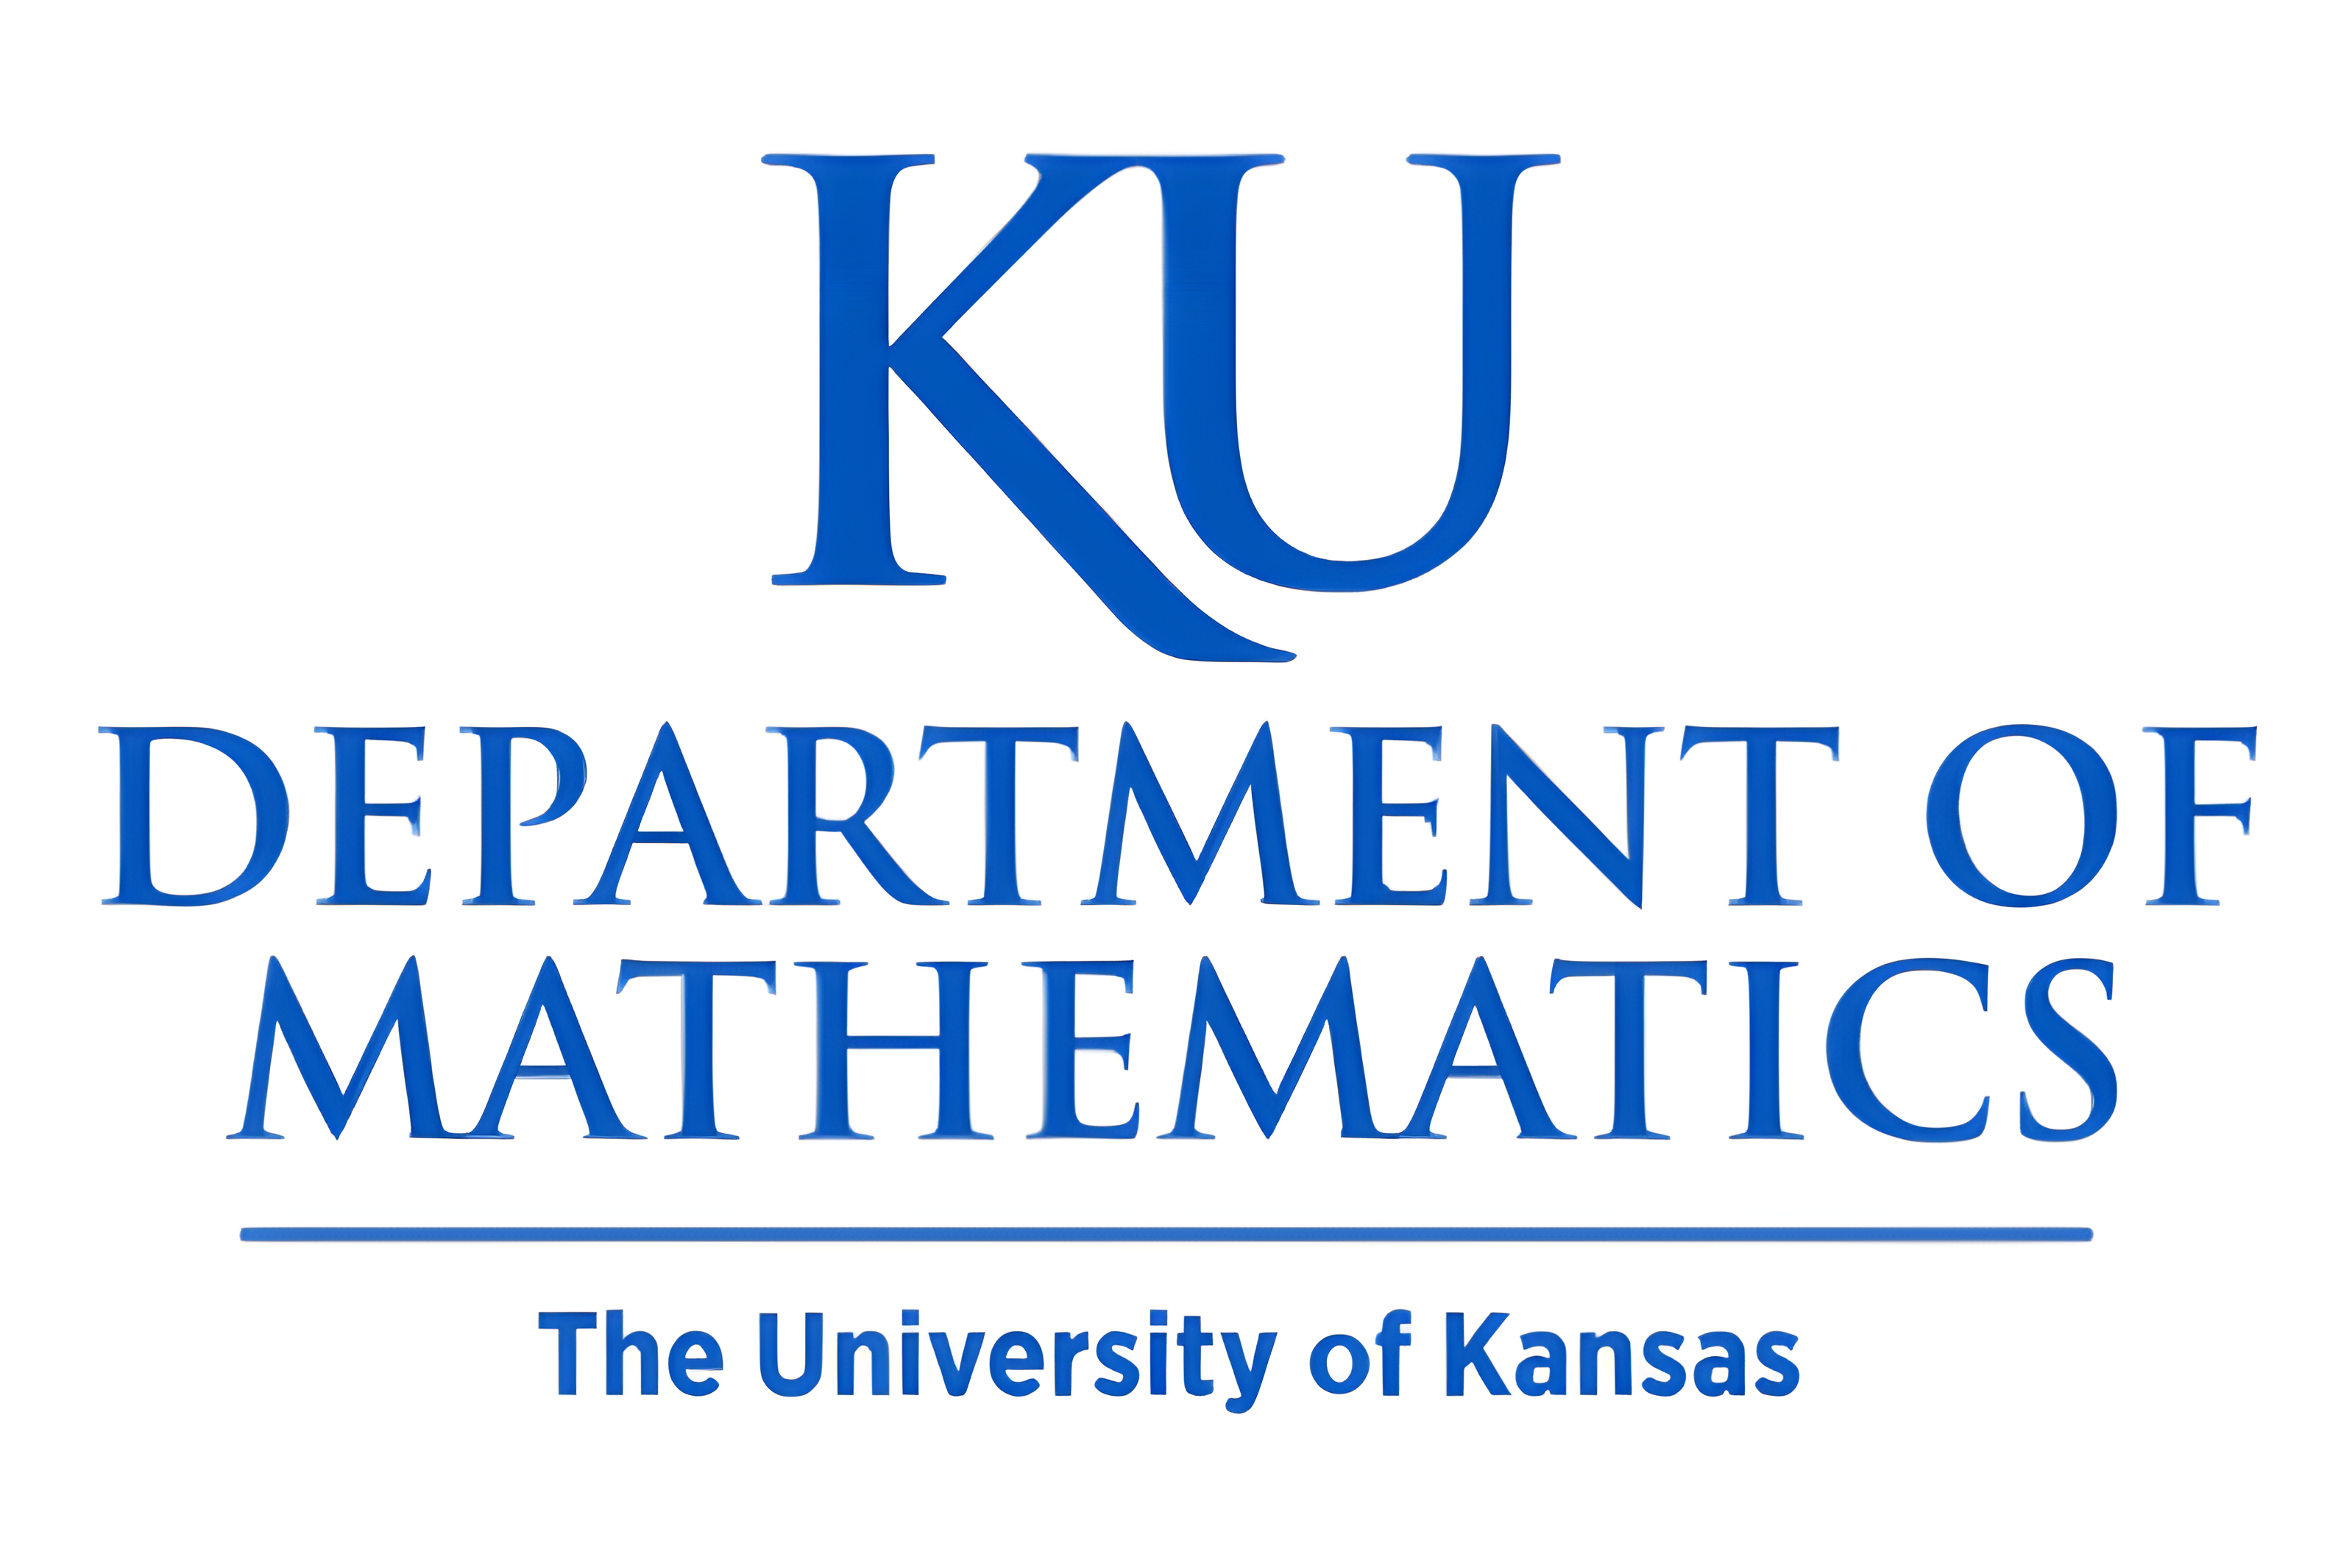 KU Department of Mathmatics logo